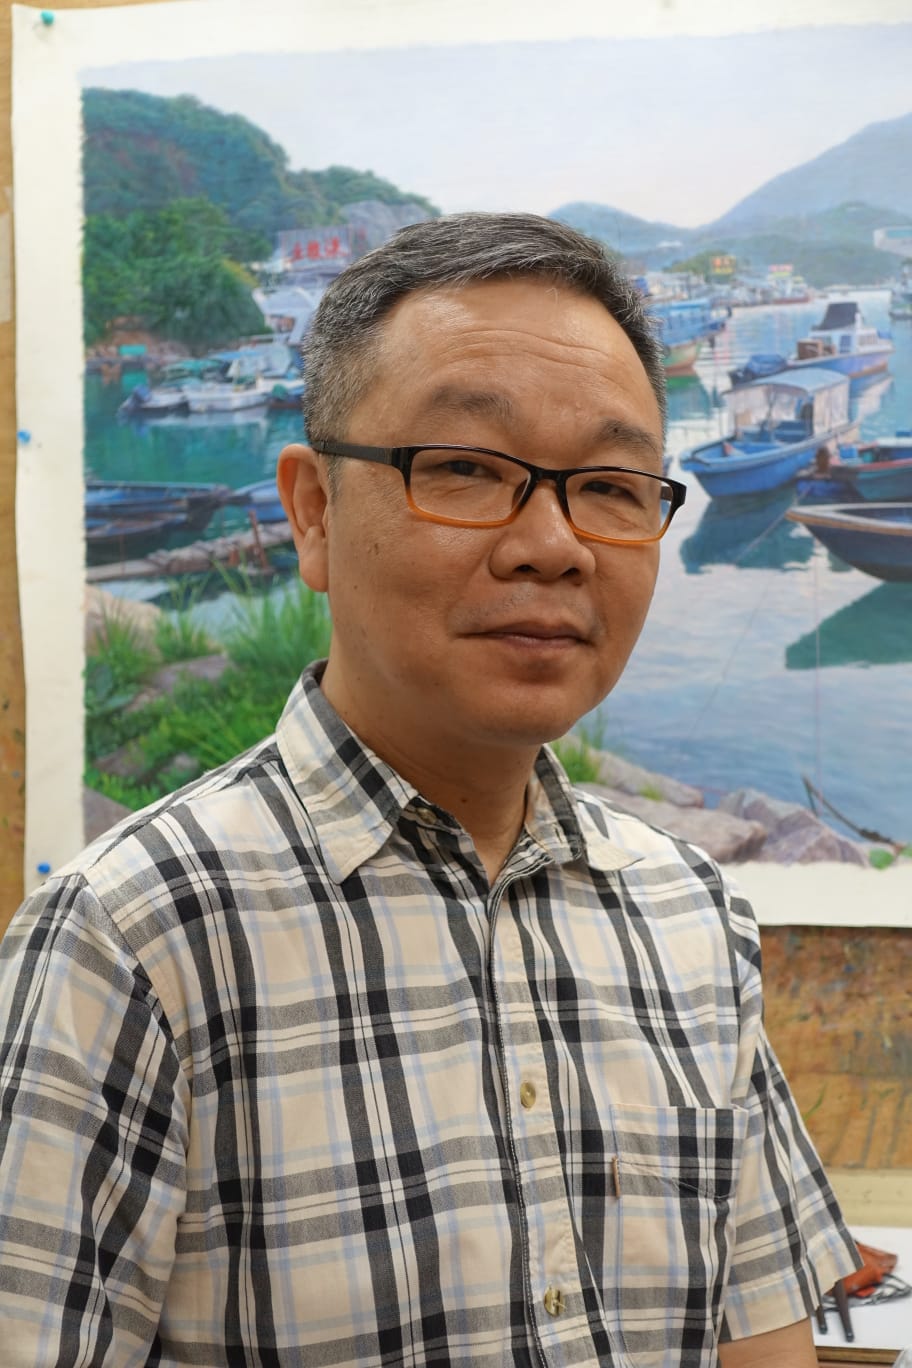 林冠雄 (Jason Lam)，香港土生土长画家